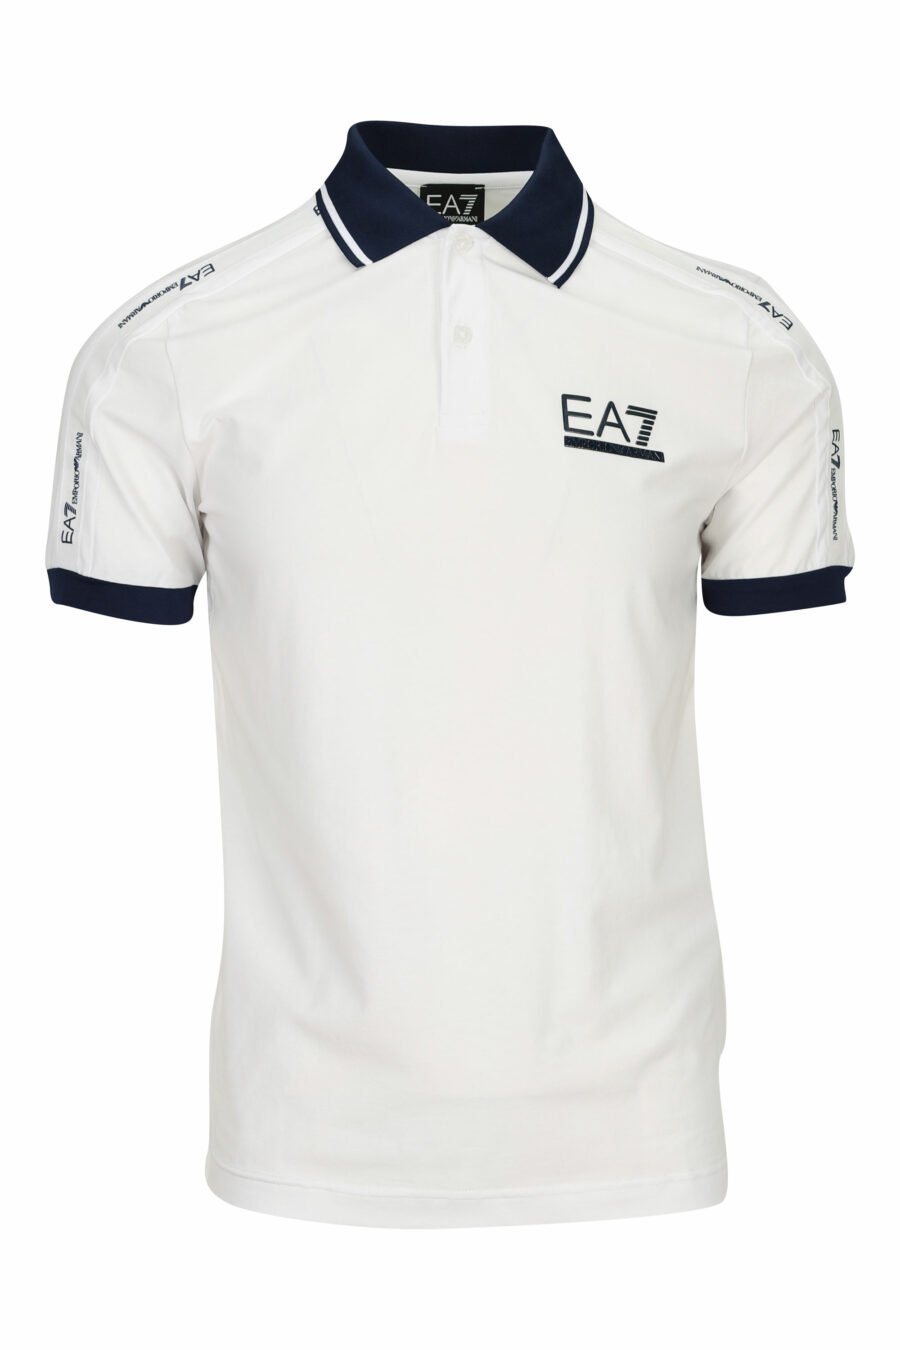 Weißes Poloshirt mit Mini-Logo "lux identity" auf der Schulterpartie - 8058947458868 1